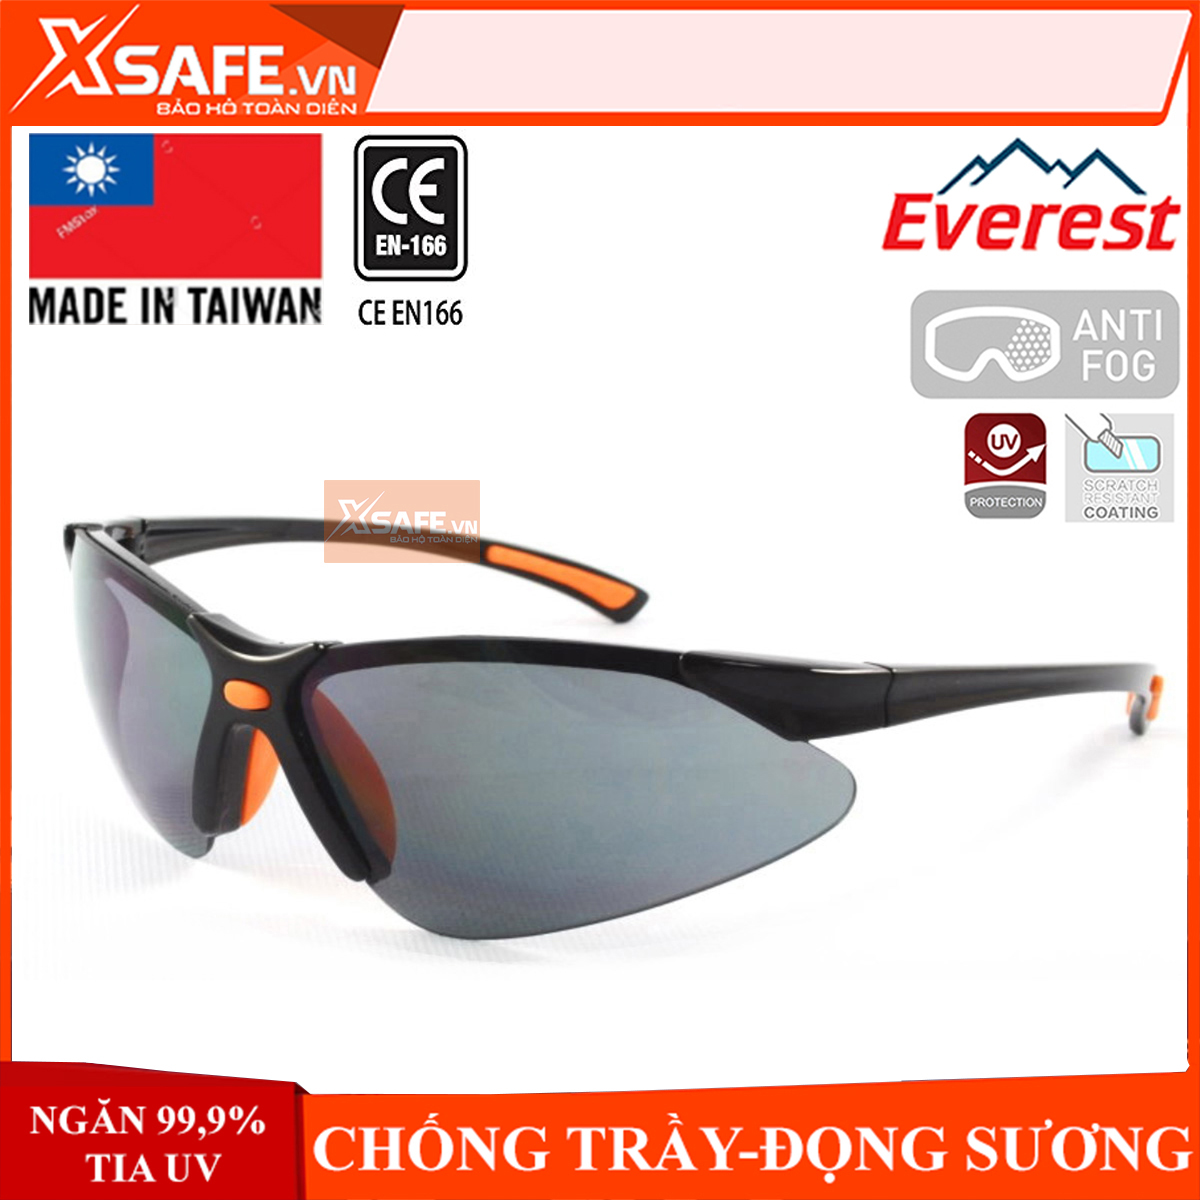 Kính bảo hộ Everest EV302 Mắt kính chống bụi, chống tia UV, đọng sương, bảo vệ mắt khi đi xe, lao động, tròng kính râm